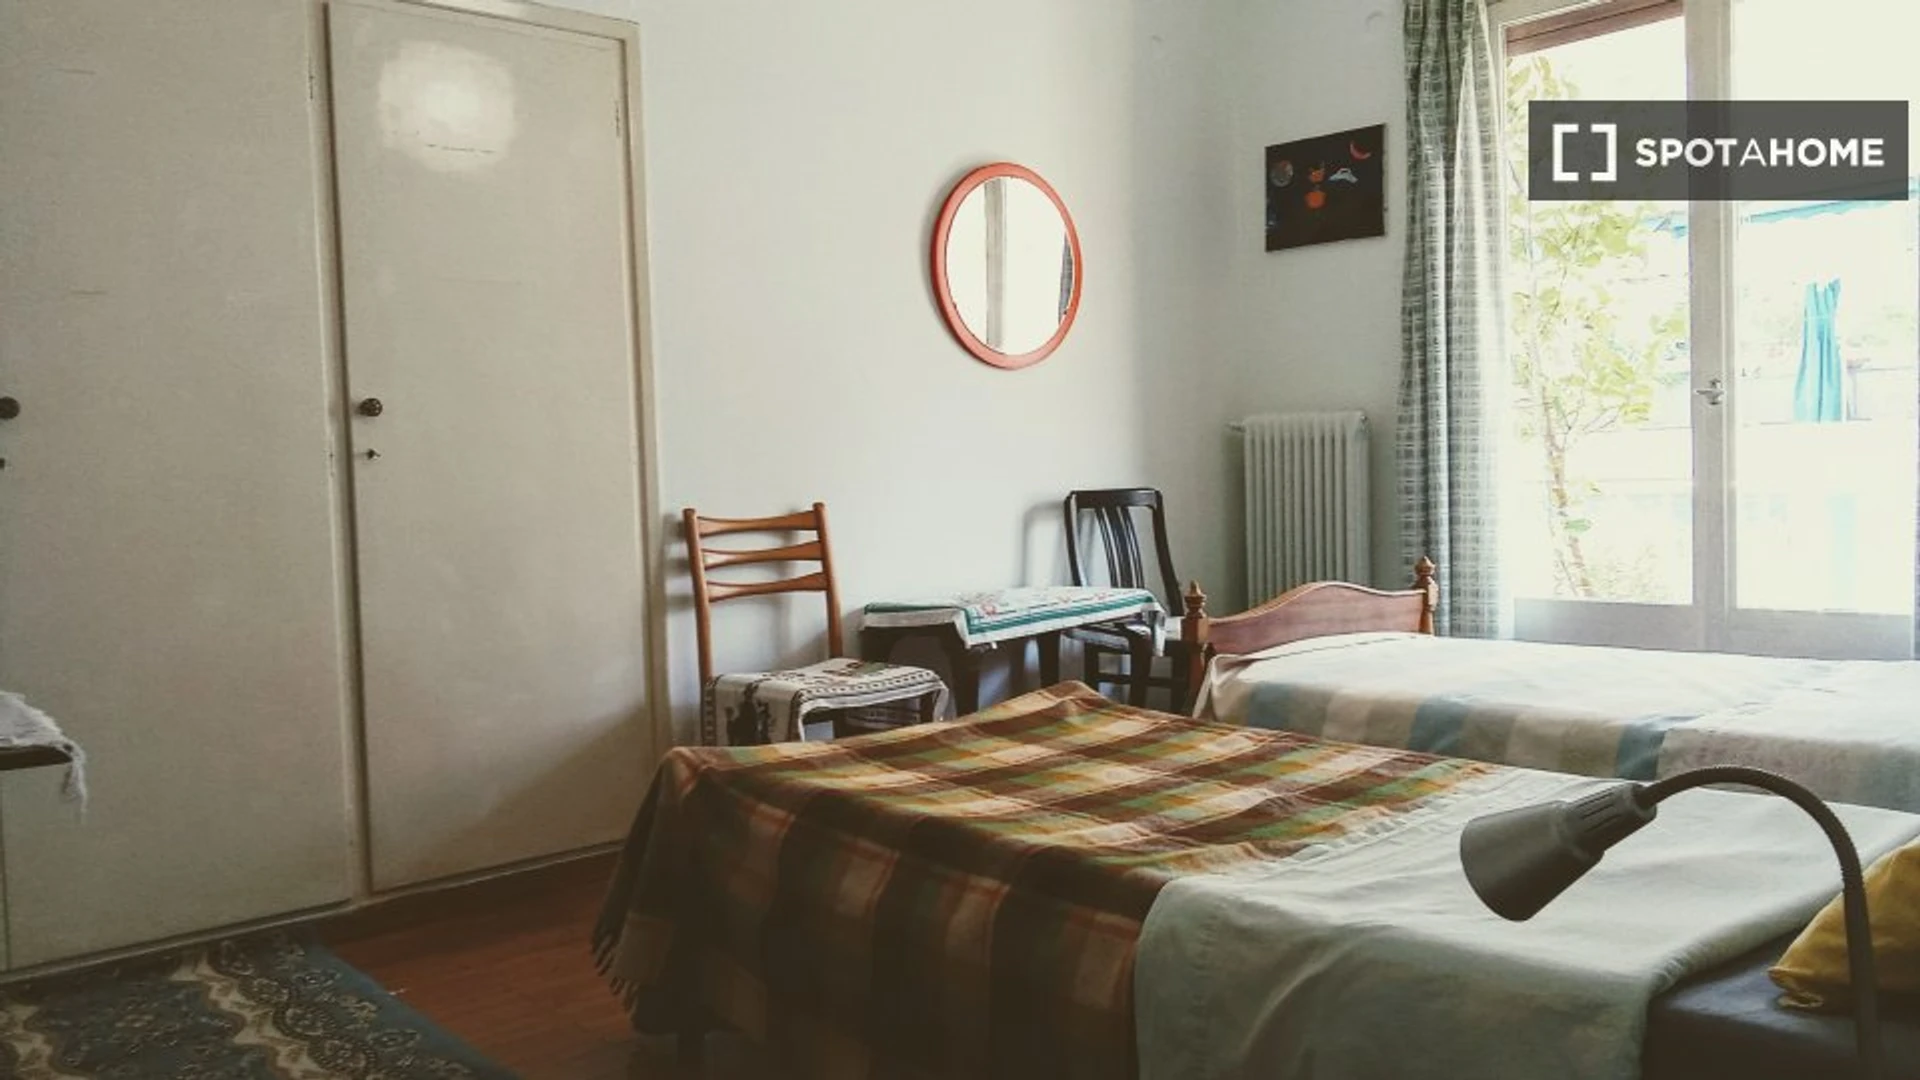 Alquiler de habitación en piso compartido en Atenas